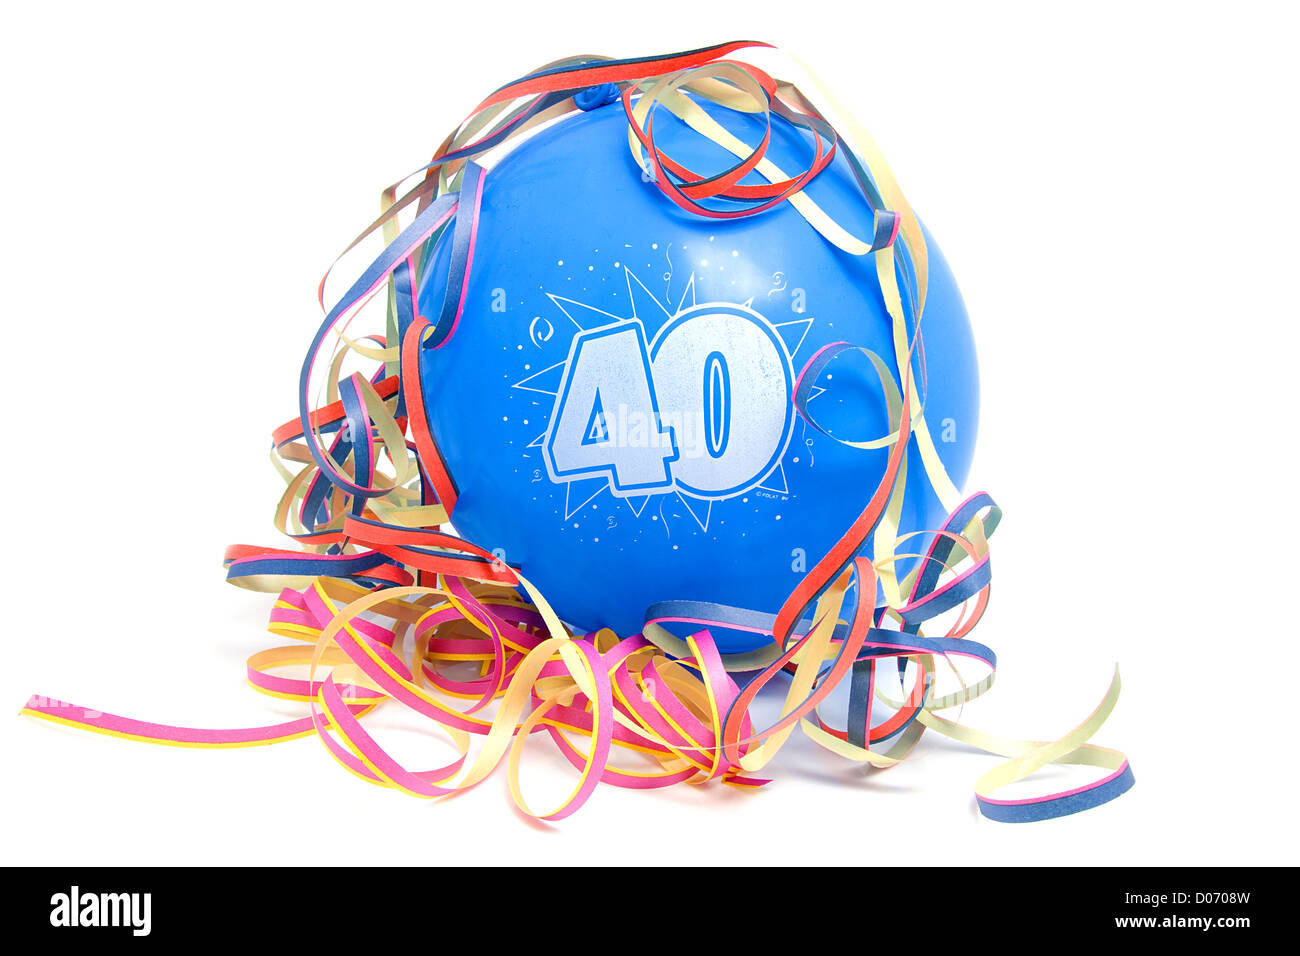 Ballon blau Geburtstag für jemand, der 40 Jahre alt mit Partystromer auf  weißem Hintergrund Stockfotografie - Alamy